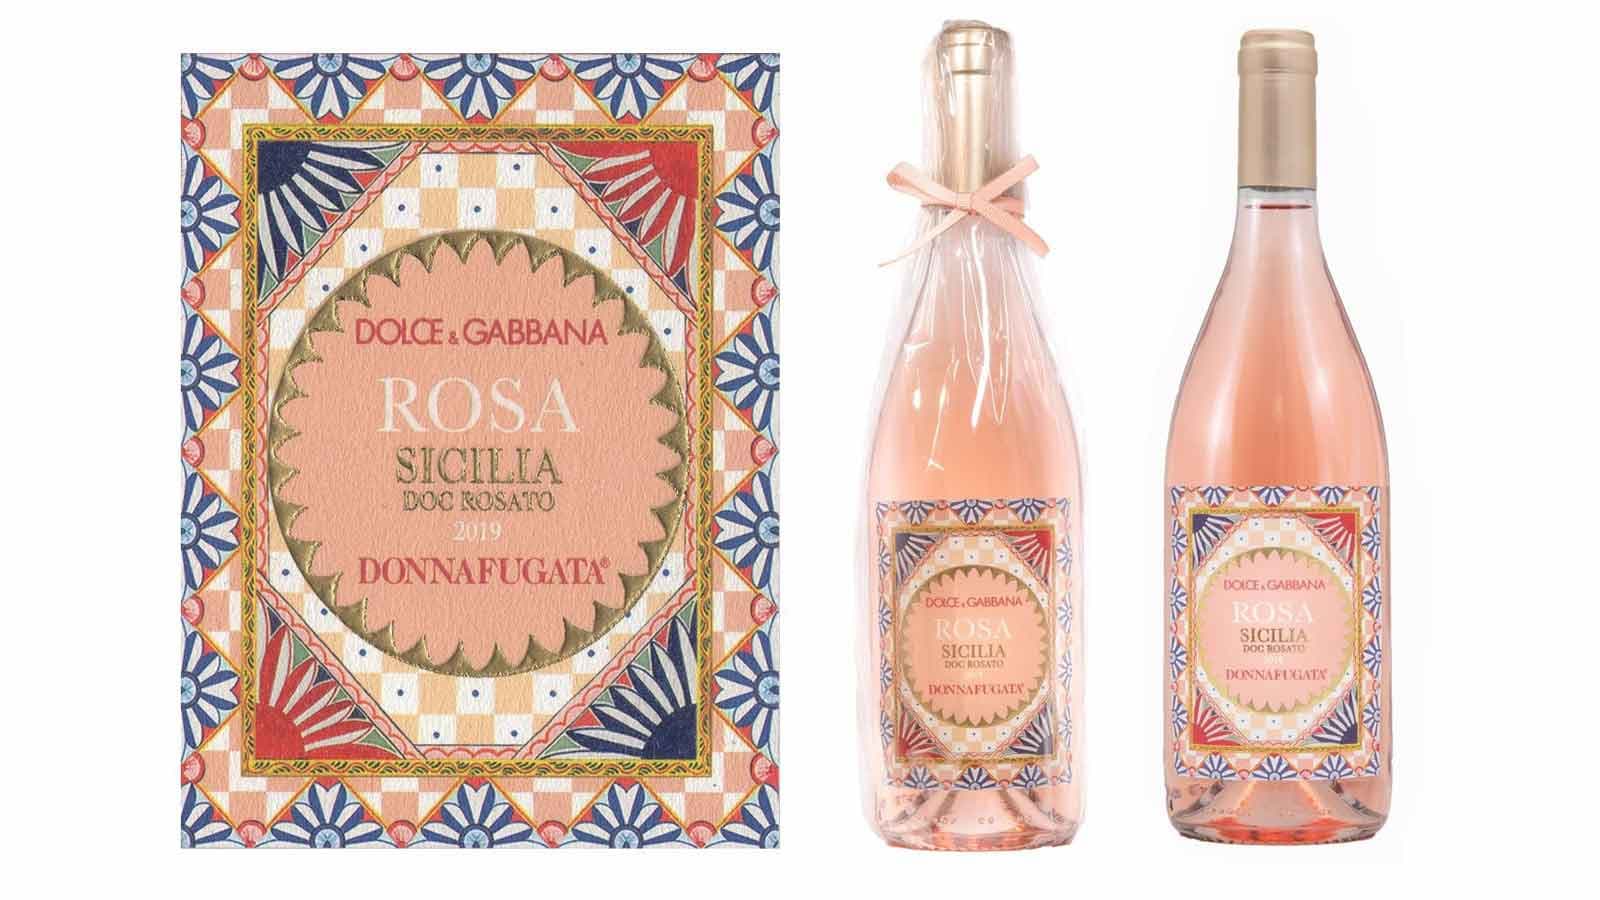 Dolce & Gabbana ra mắt dòng rượu vang Rosa hội tụ tinh hoa xứ Sicily